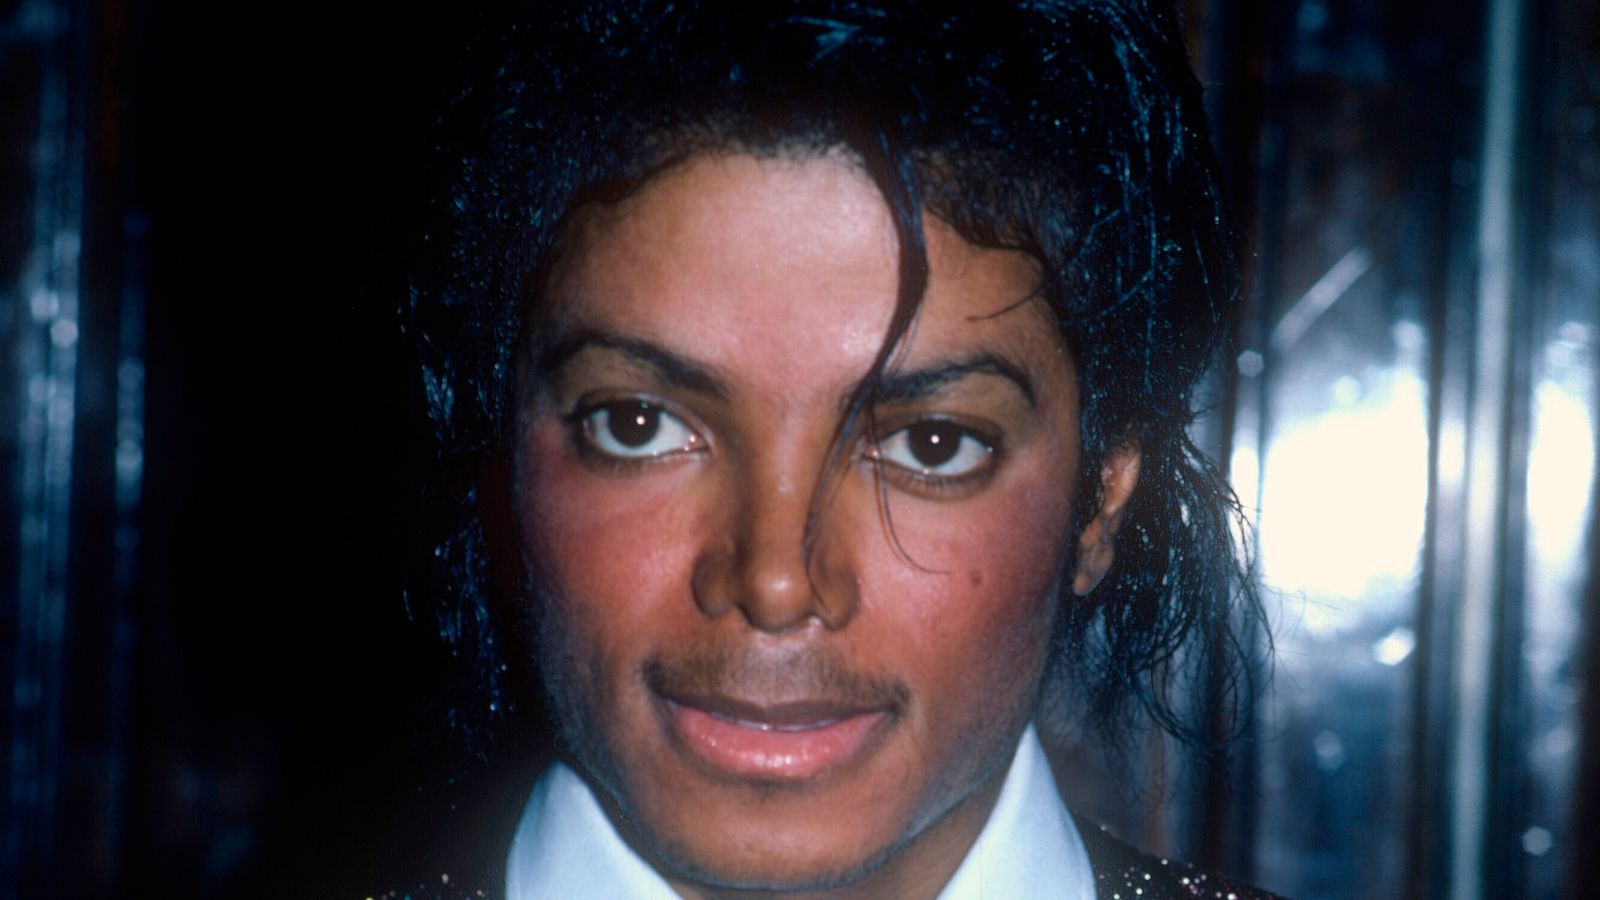 Kurtka Michaela Jacksona z reklamy Pepsi z 1984 roku sprzedana na aukcji za 250 000 funtów |  Wiadomości z Wielkiej Brytanii